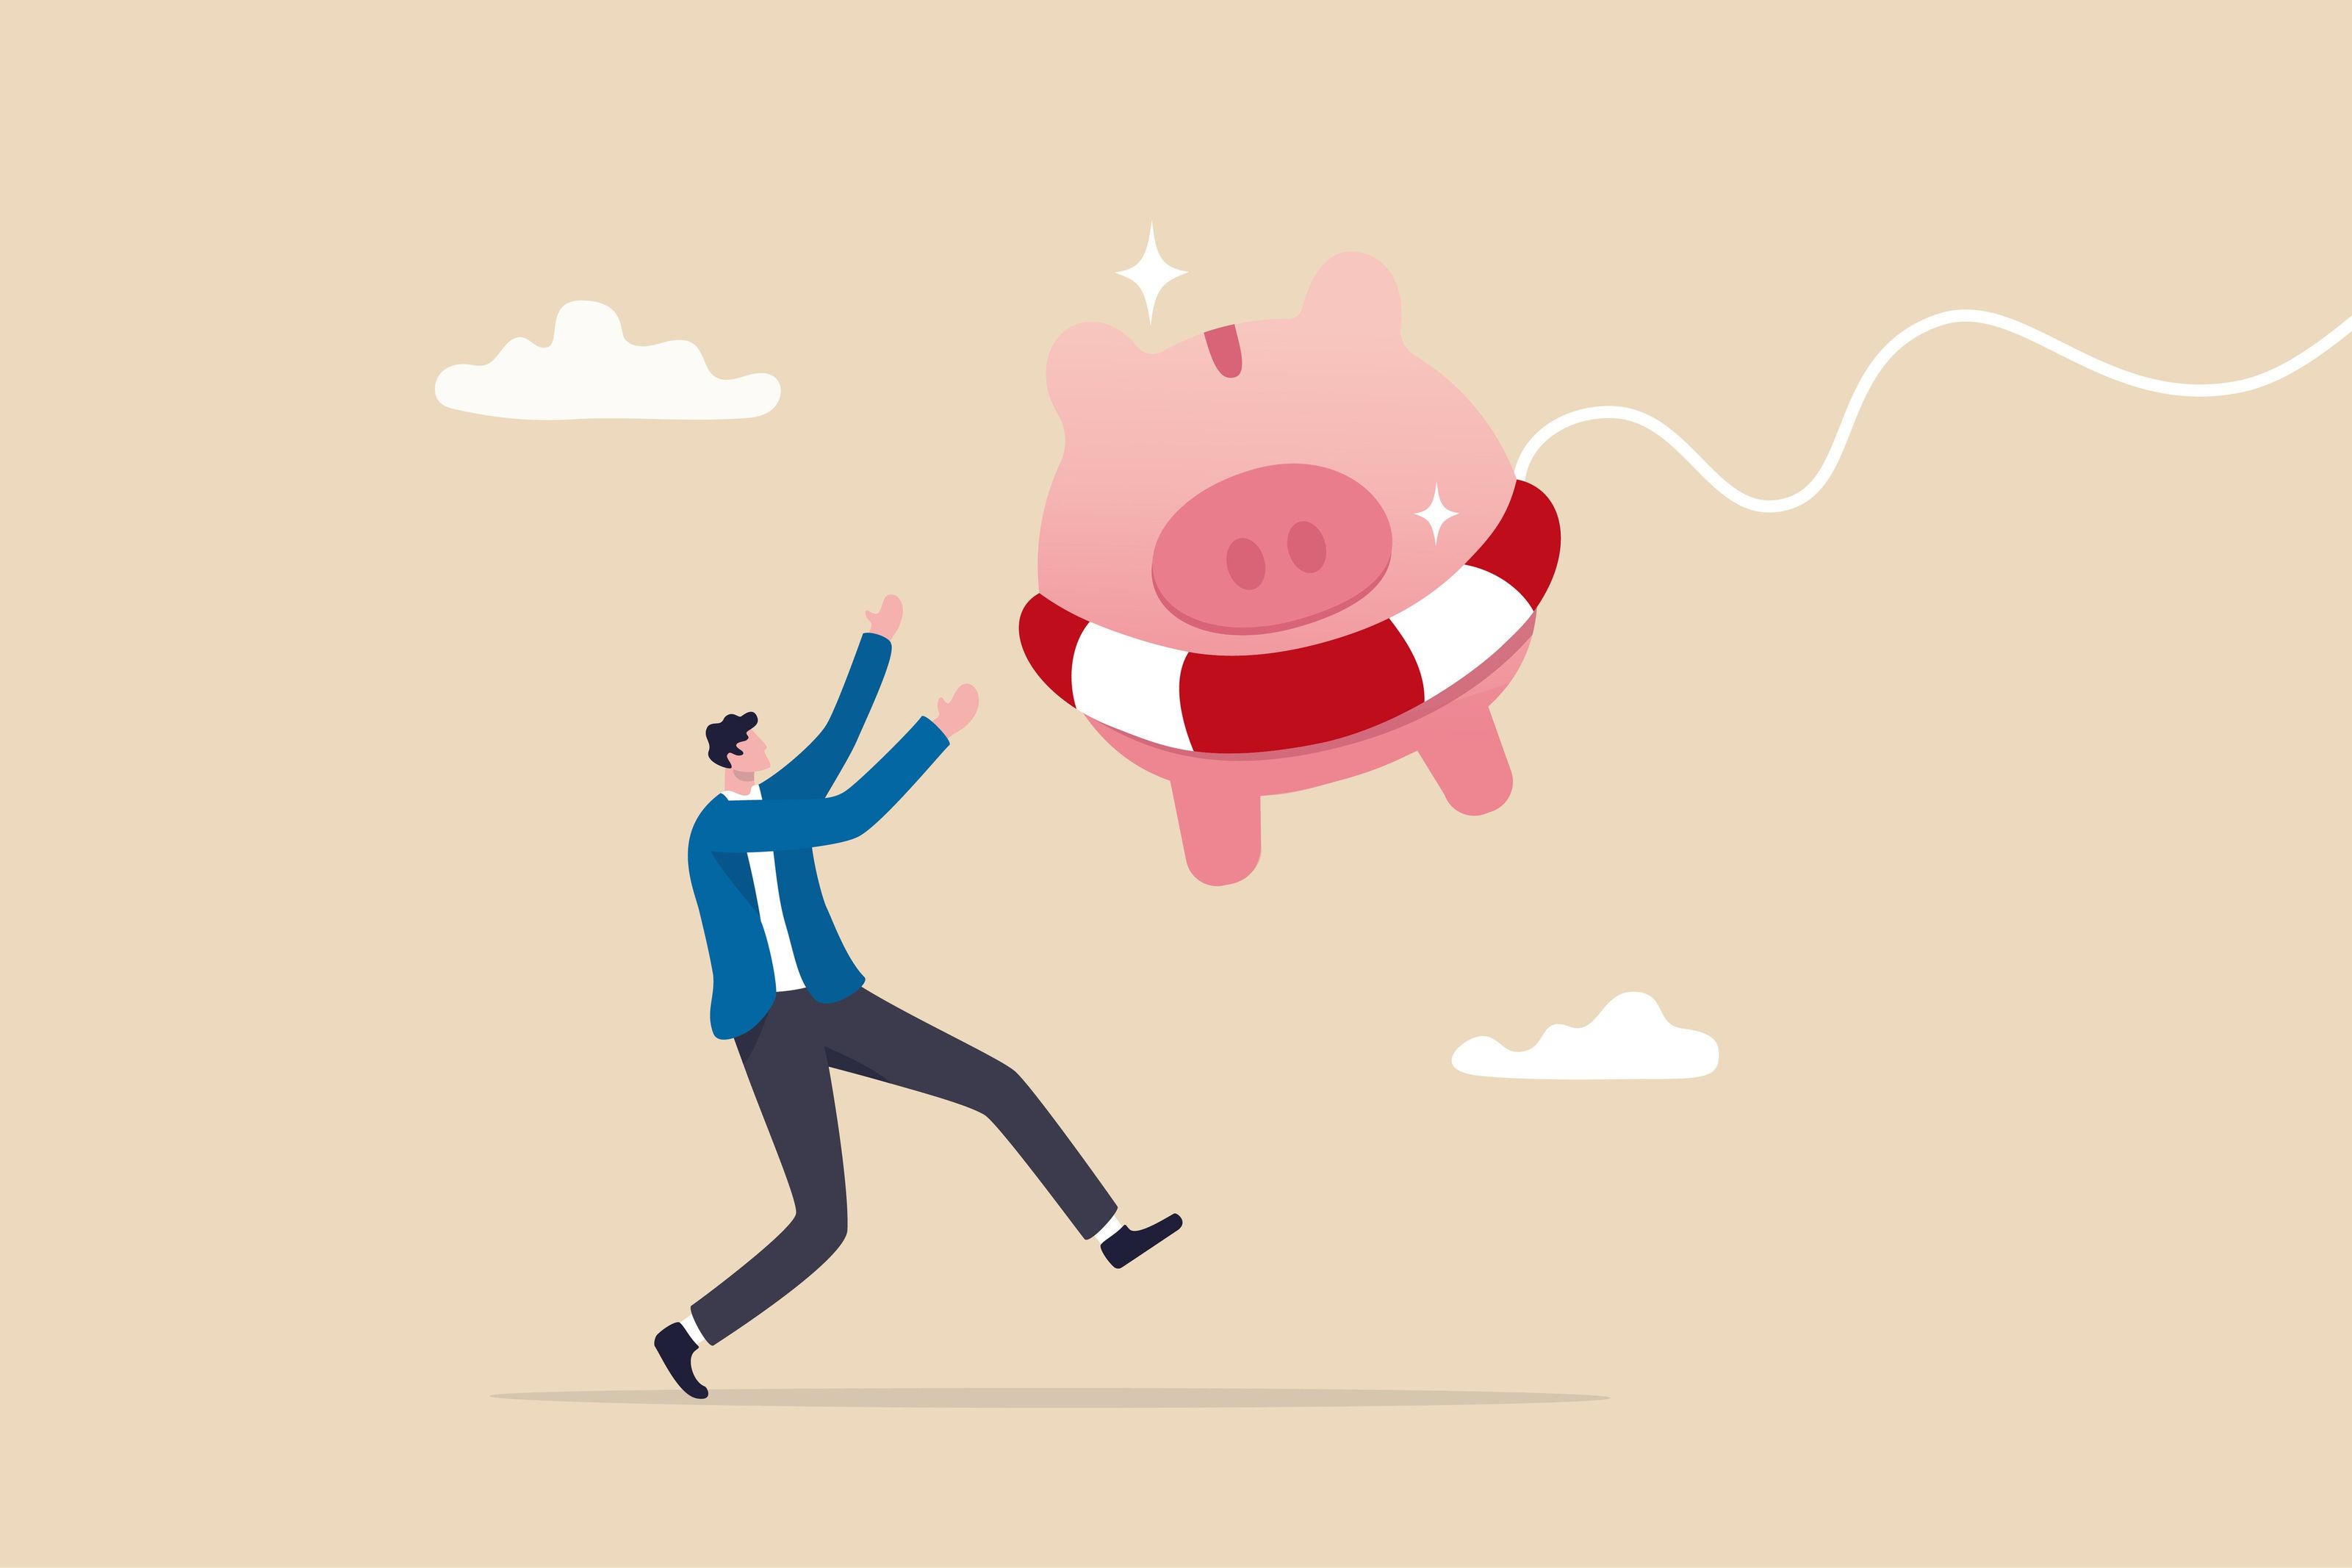 Schaffung eines Notfallfonds, um mit dem Investieren zu beginnen, dargestellt durch ein Bild mit einem Cartoon-Mann, der ein rosa Ballonschwein fängt